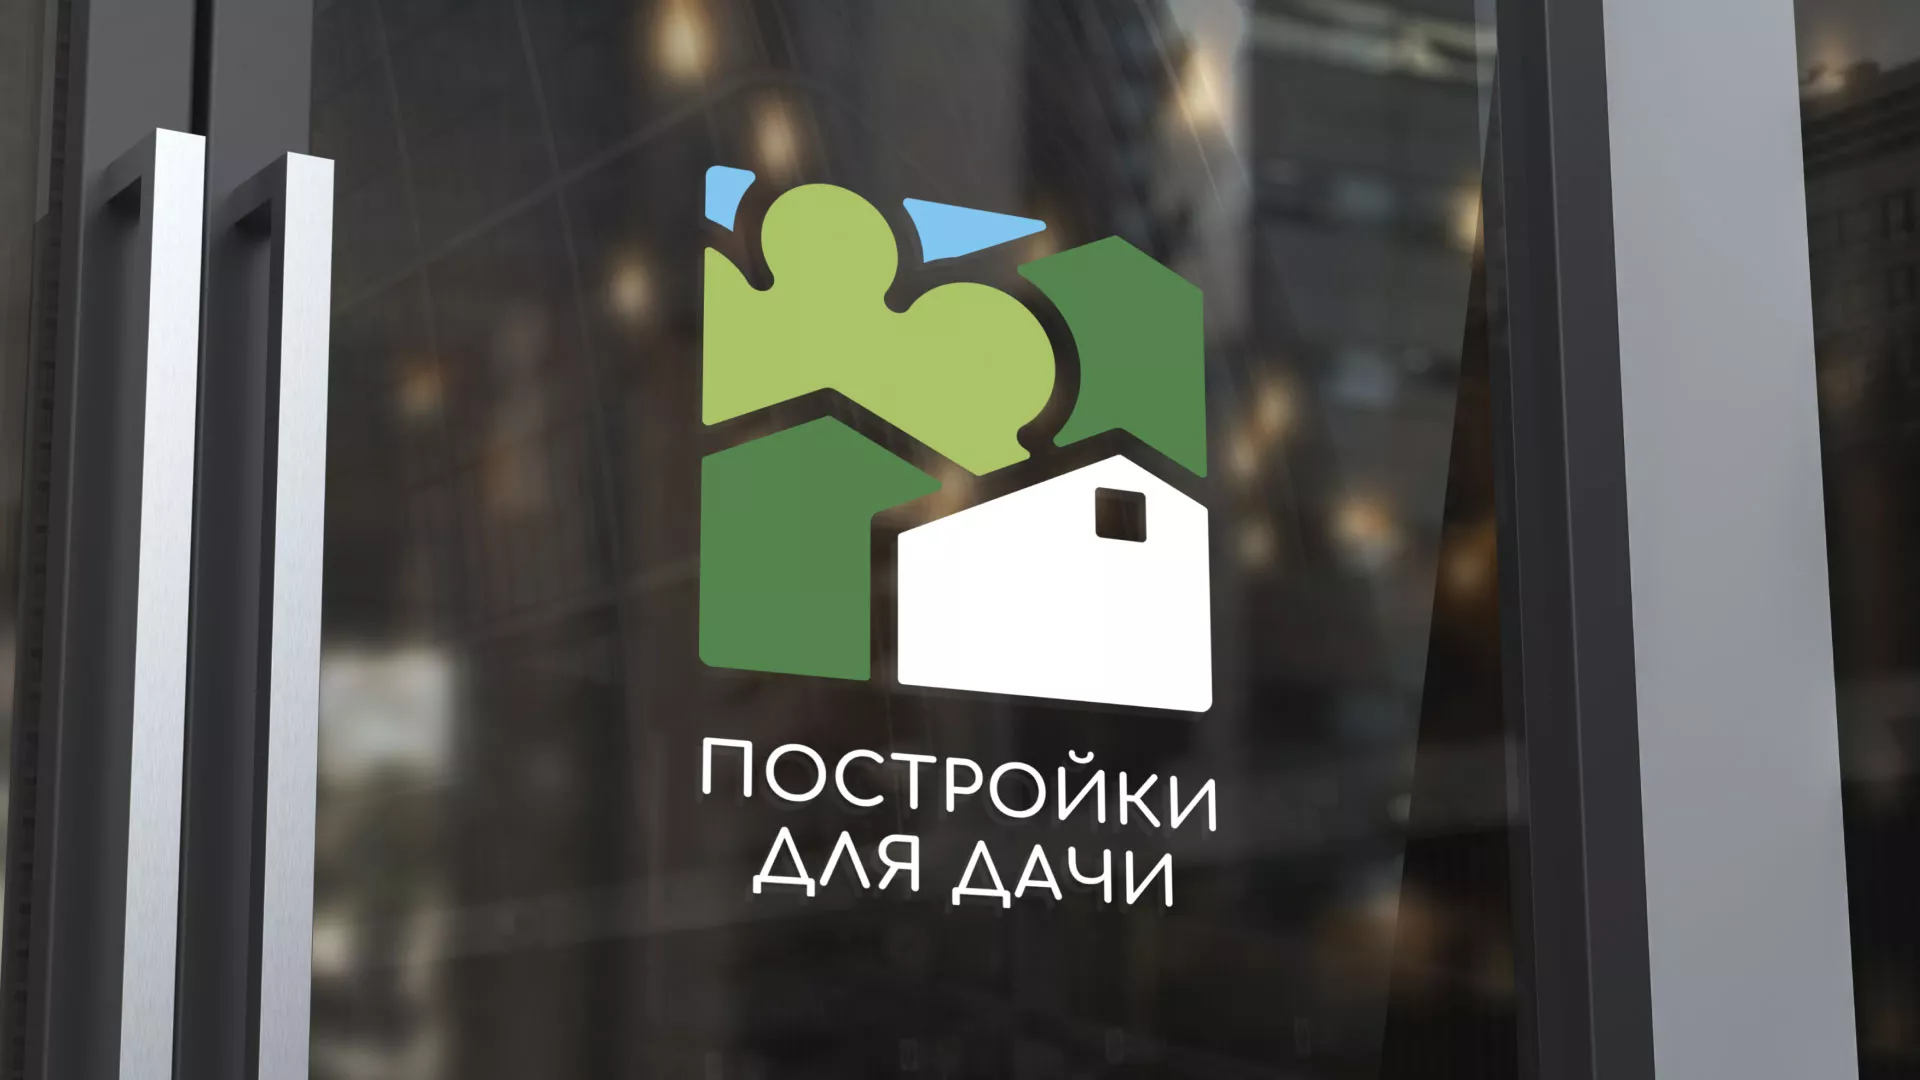 Разработка логотипа в Короче для компании «Постройки для дачи»